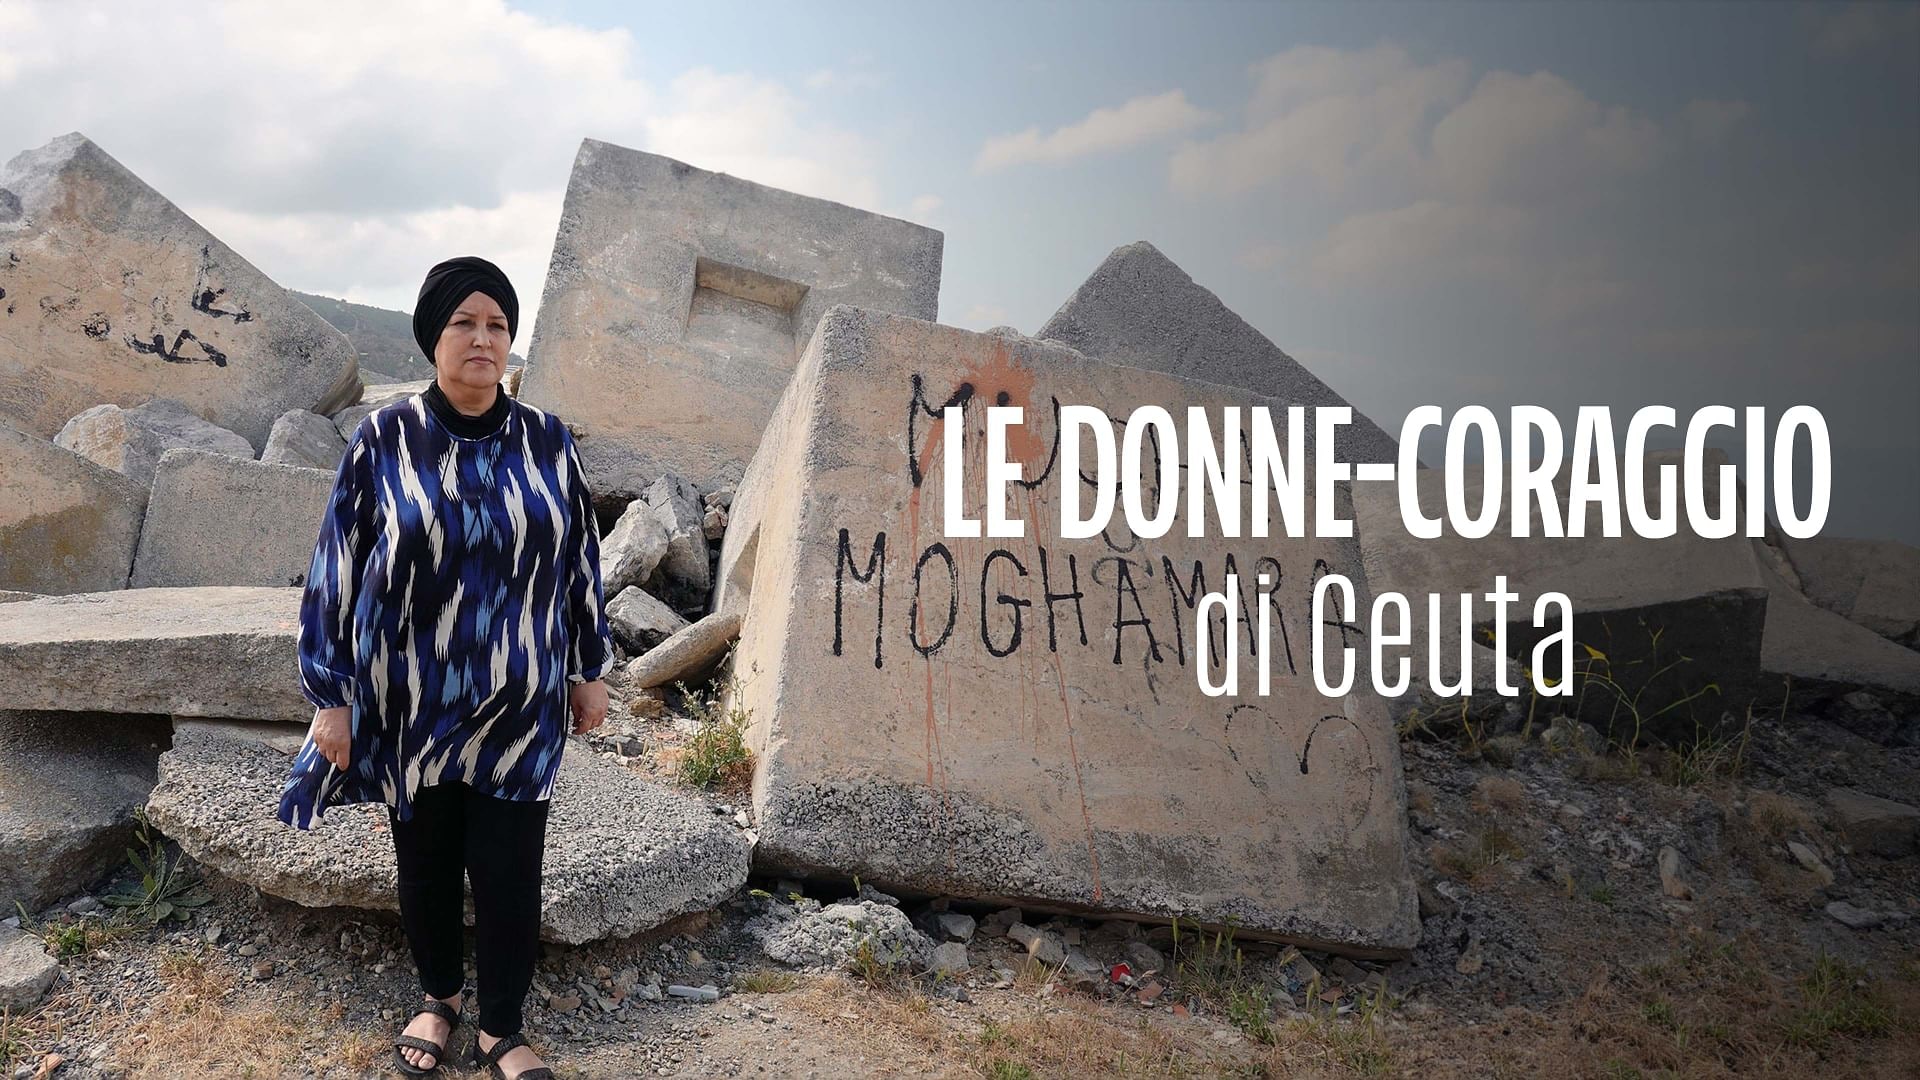 Re: sguardi sulla società - Ceuta: donne in lotta contro la miseria